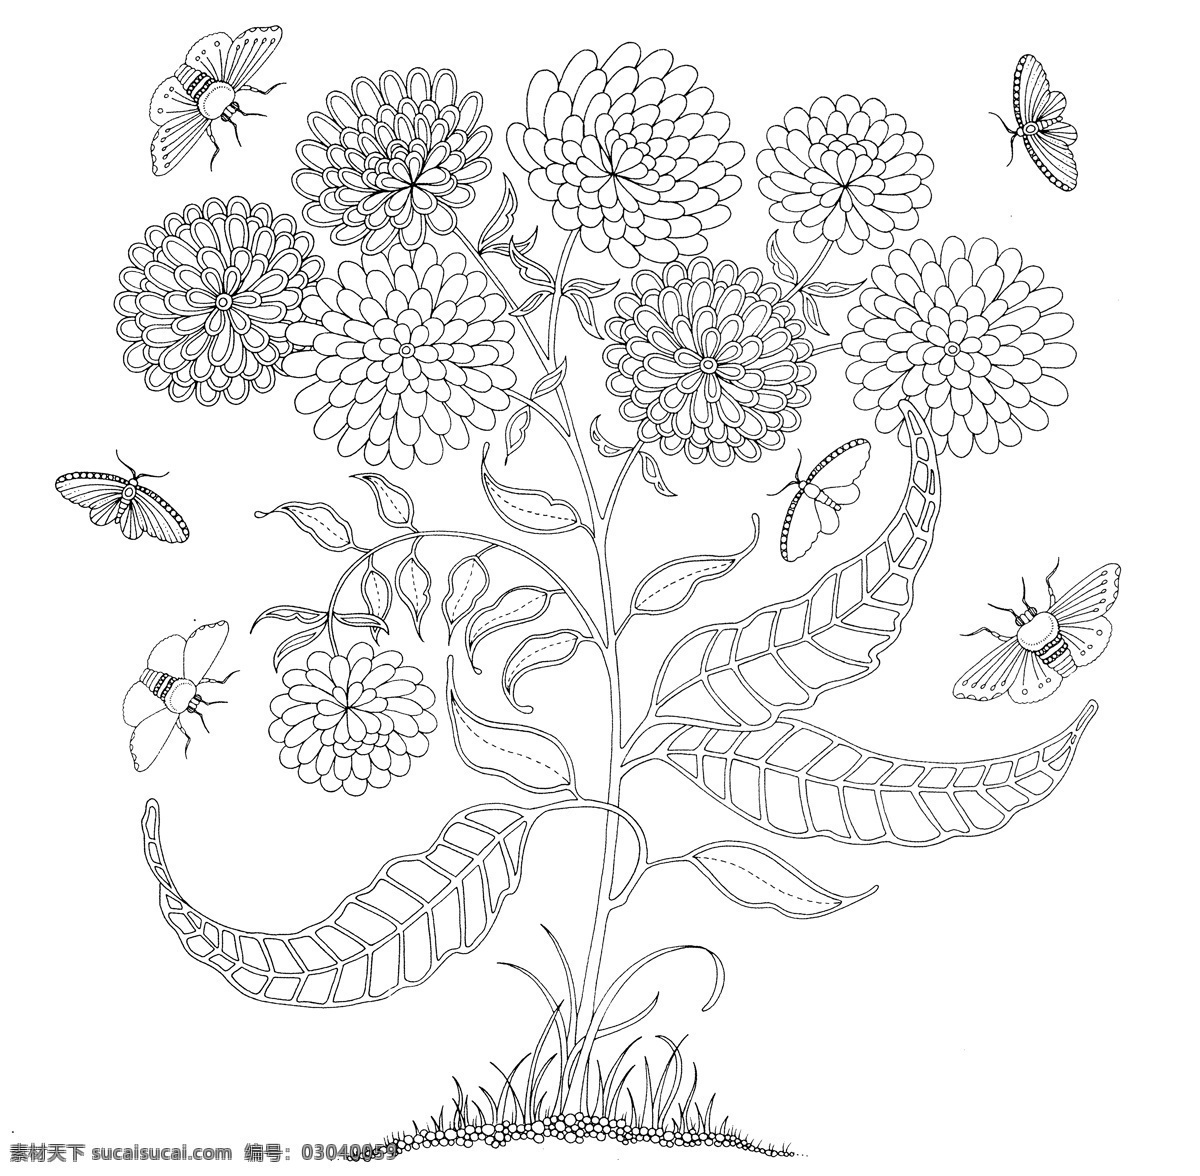 秘密花园 手绘本 动植物图 素描图 秘密 黑白 文化艺术 绘画书法